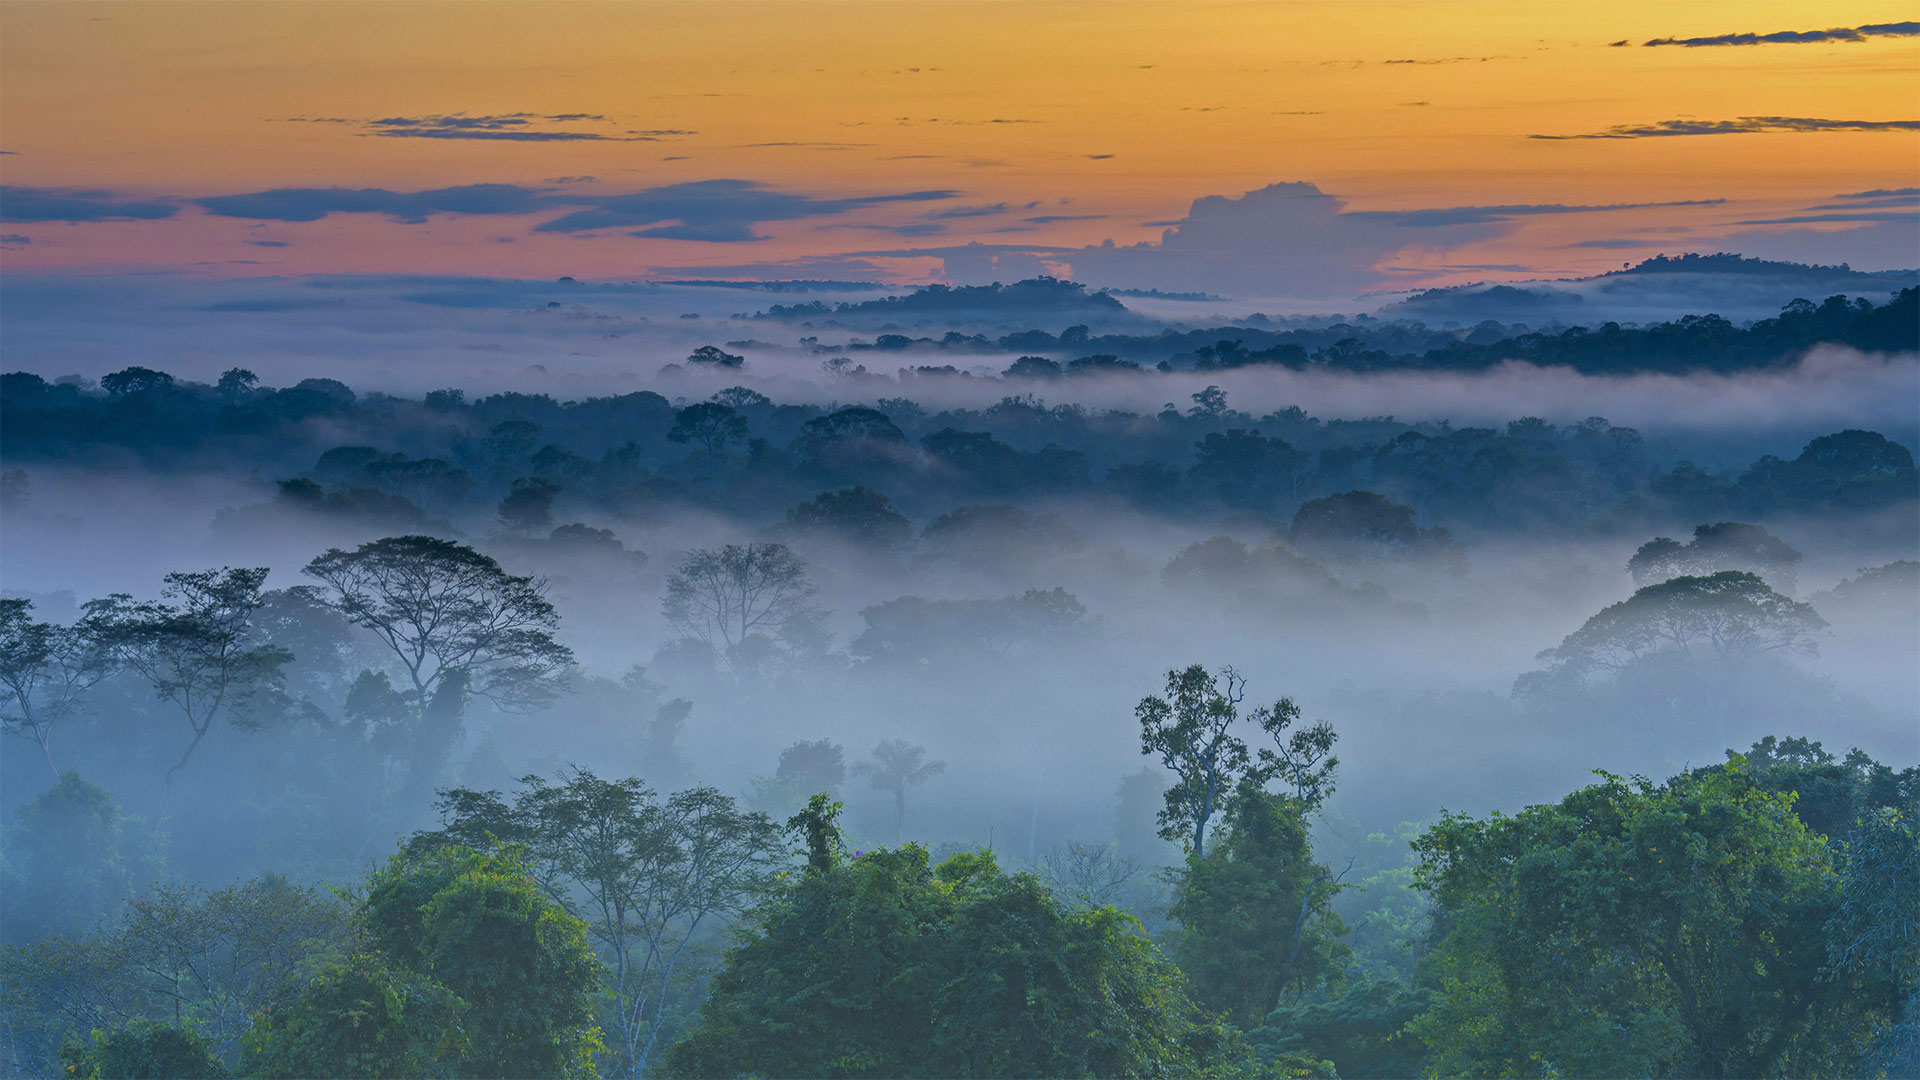 Амазонка дика природа. Тропические дождевые леса Амазонии. Amazon Rainforest=тропические леса амазонки. Бразилия джунгли амазонки. Тропический муссонный климат.